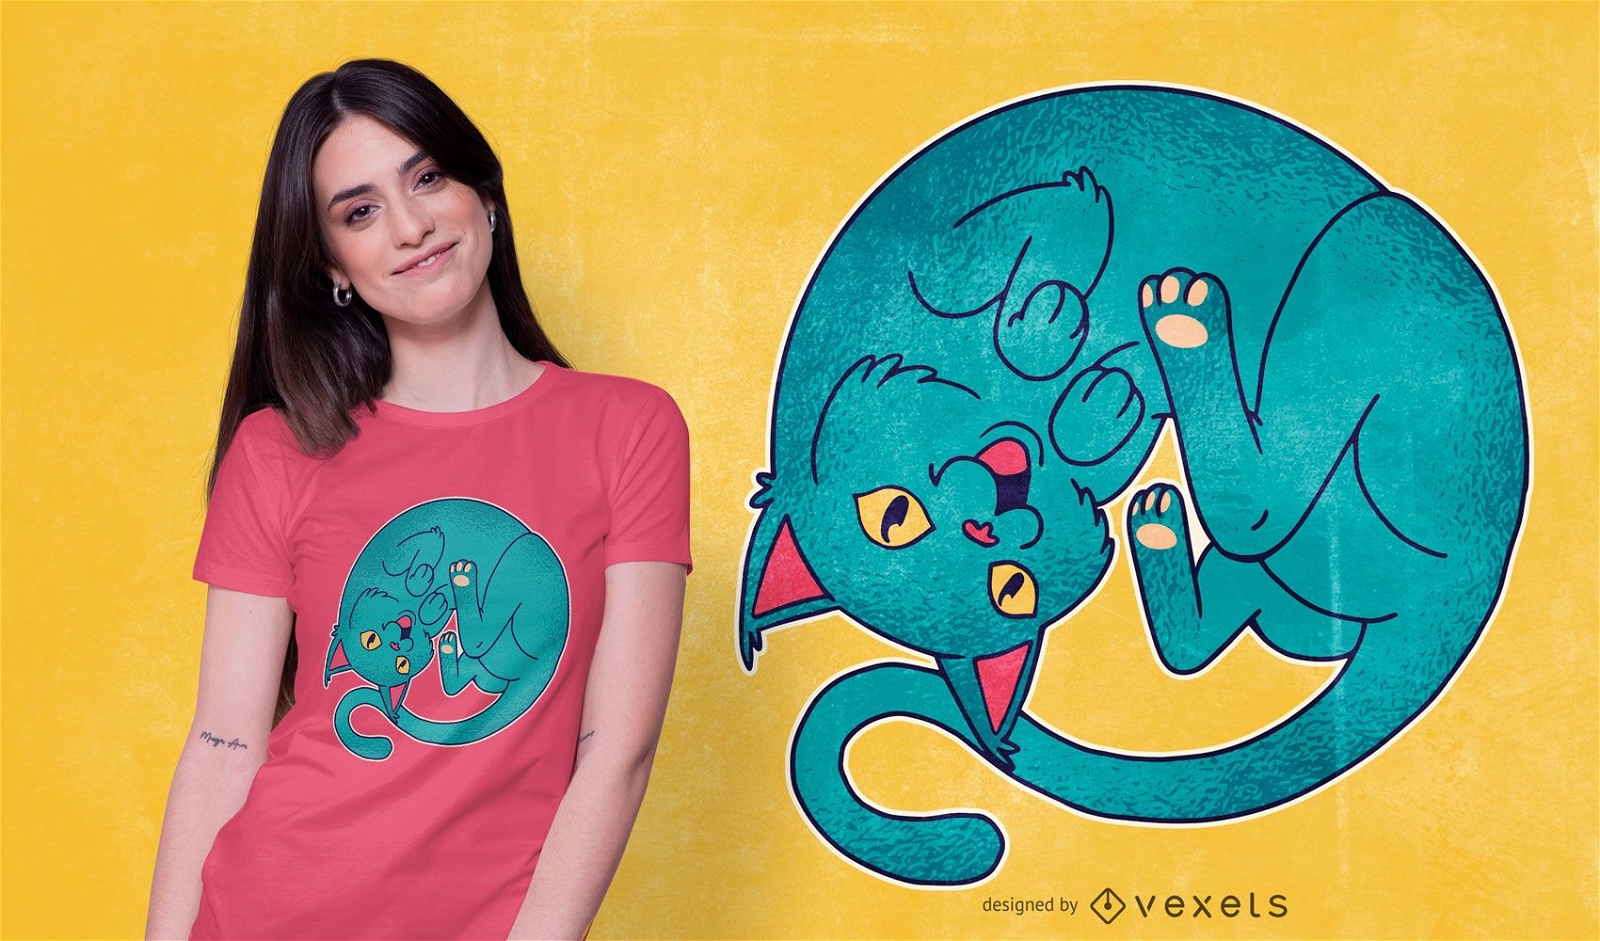 Curled Cat T-shirt Design